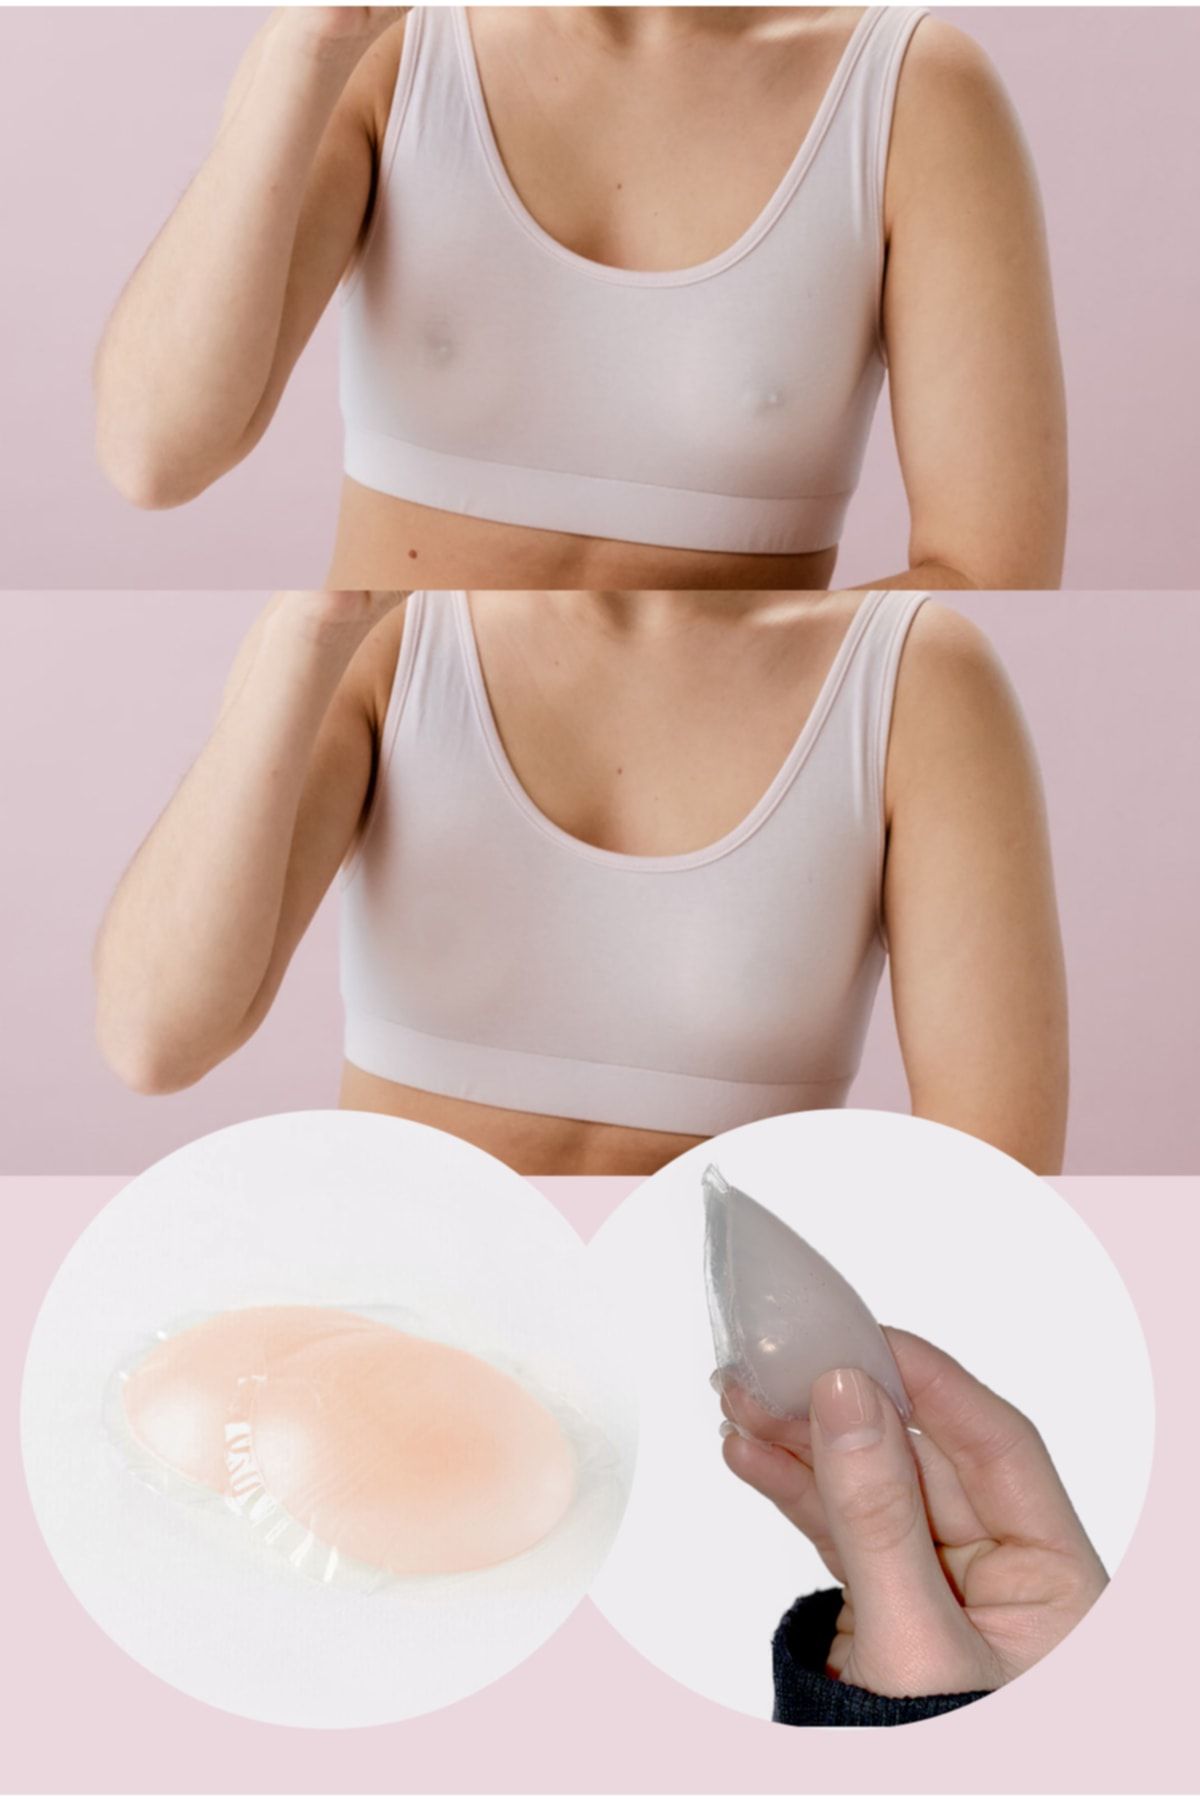 Lorelm Göğüs Ucu Kapatıcı Silikon Yapışkanlı Meme Ucu Gizleyici Nipple Concealer Pad